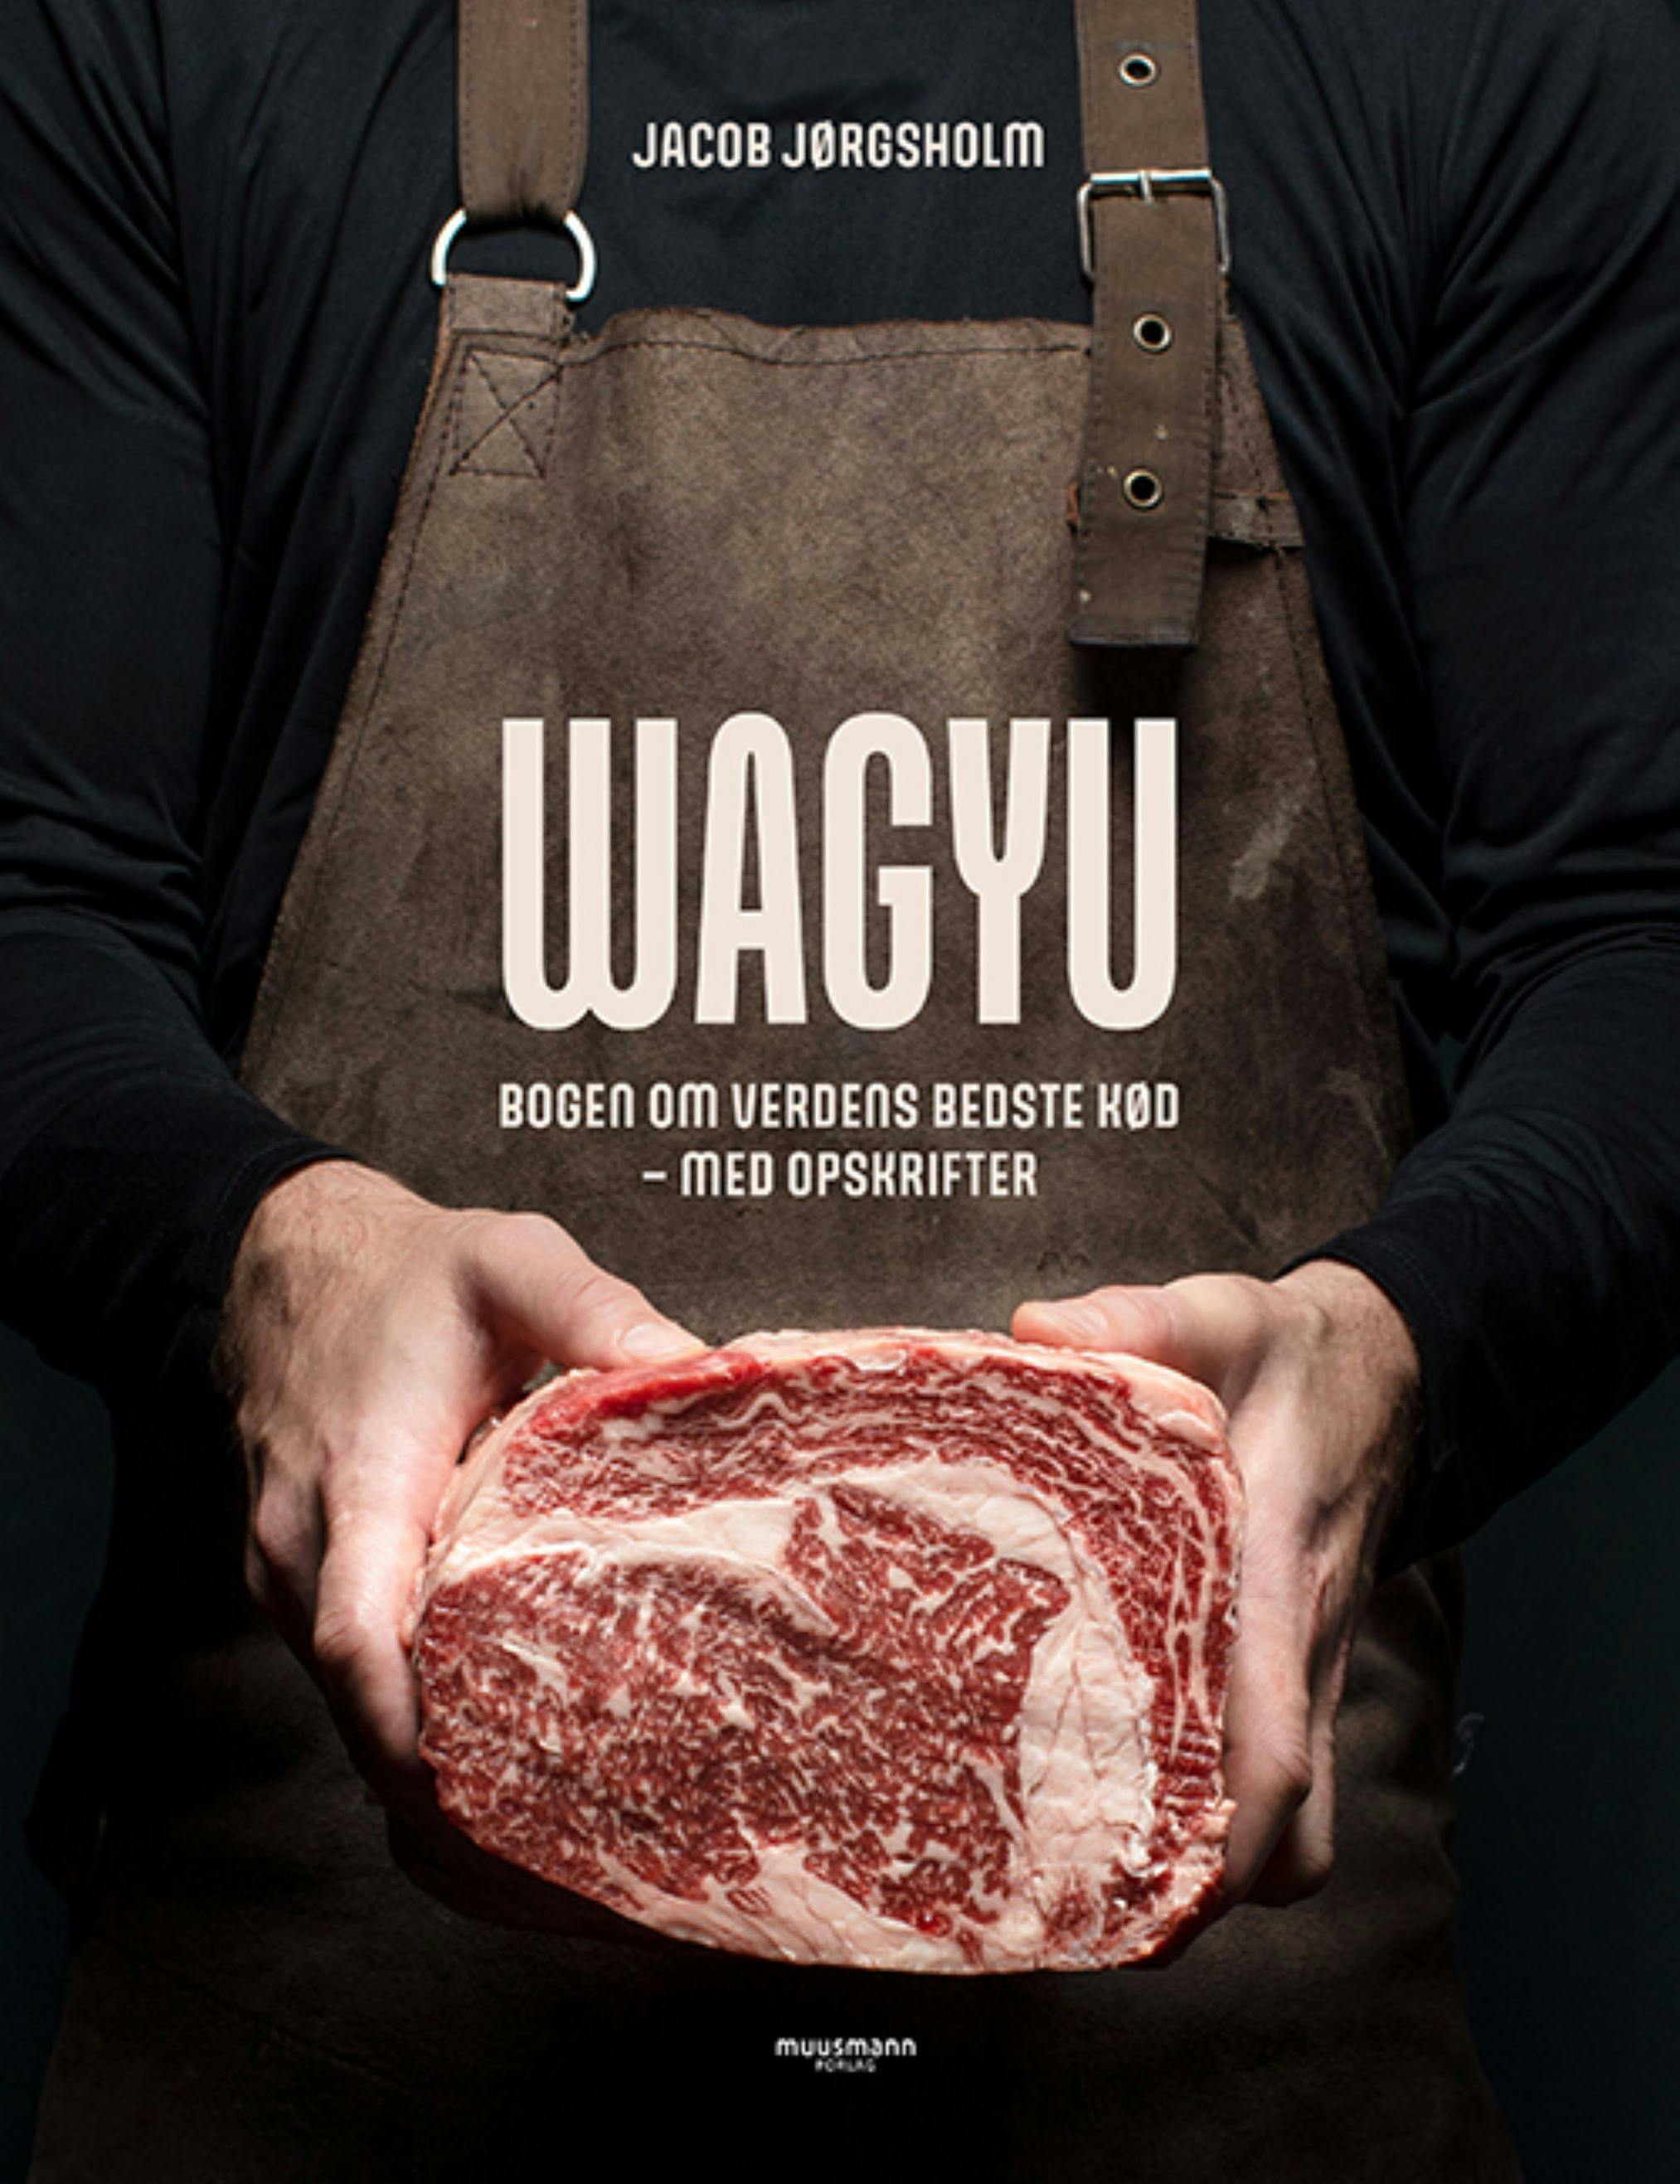 Bog om wagyu-kød med opskrifter